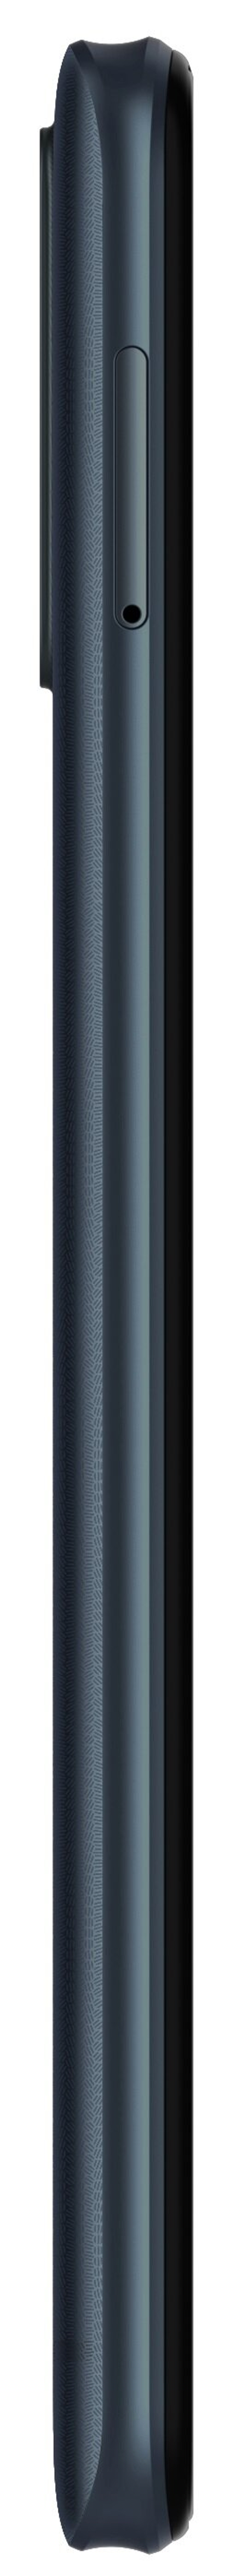 ZTE Blade A53 Pro 64 GB Dual Blau SIM